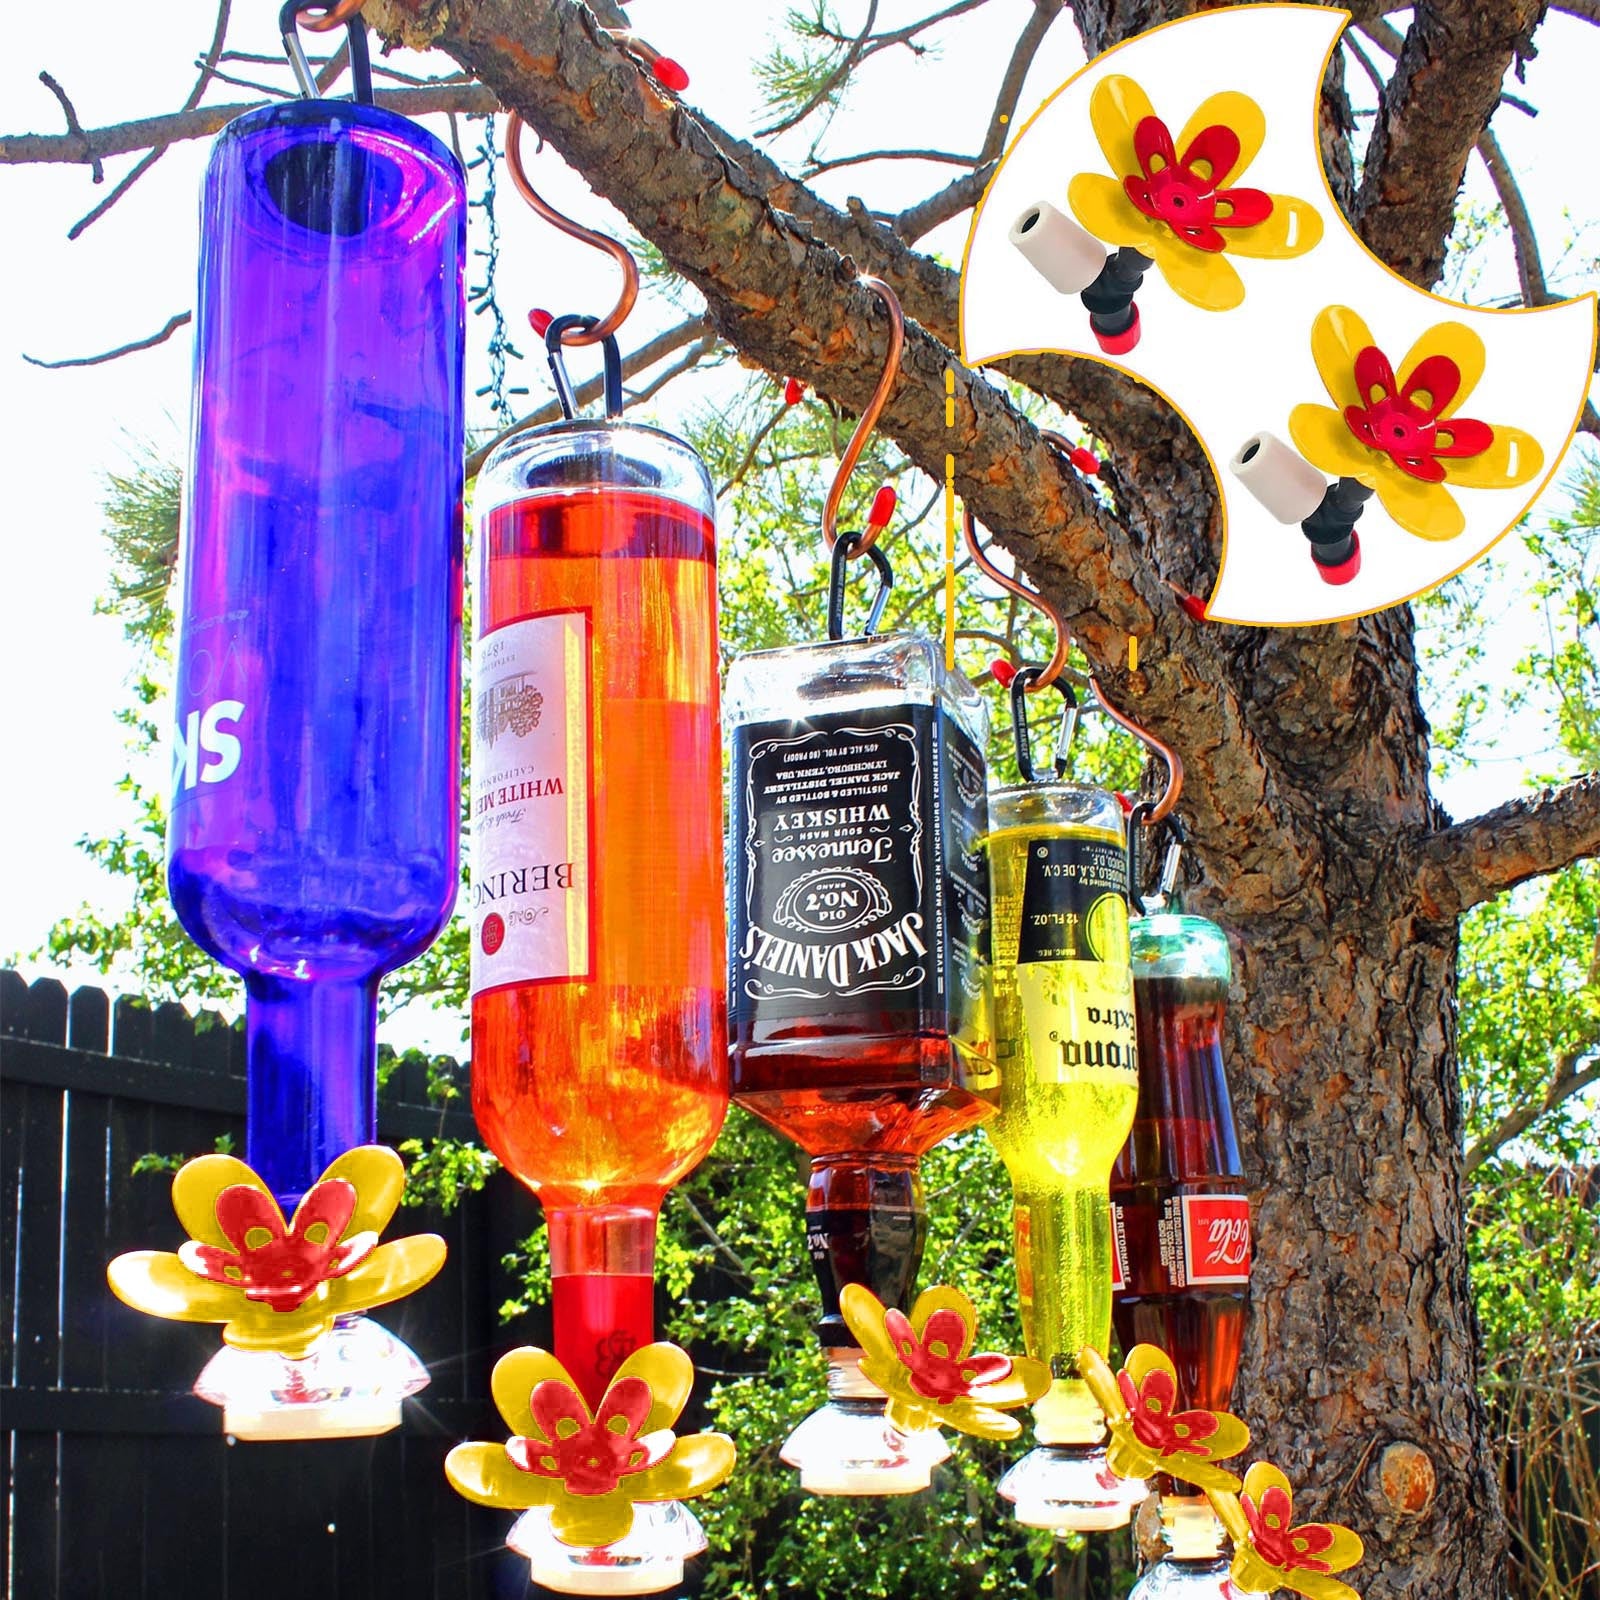 Hummingbird Feeder Wild Bird Feeder Garden Accessories Turn Your Own Recycled Bottles Into The Best Hummingbird Feeder.